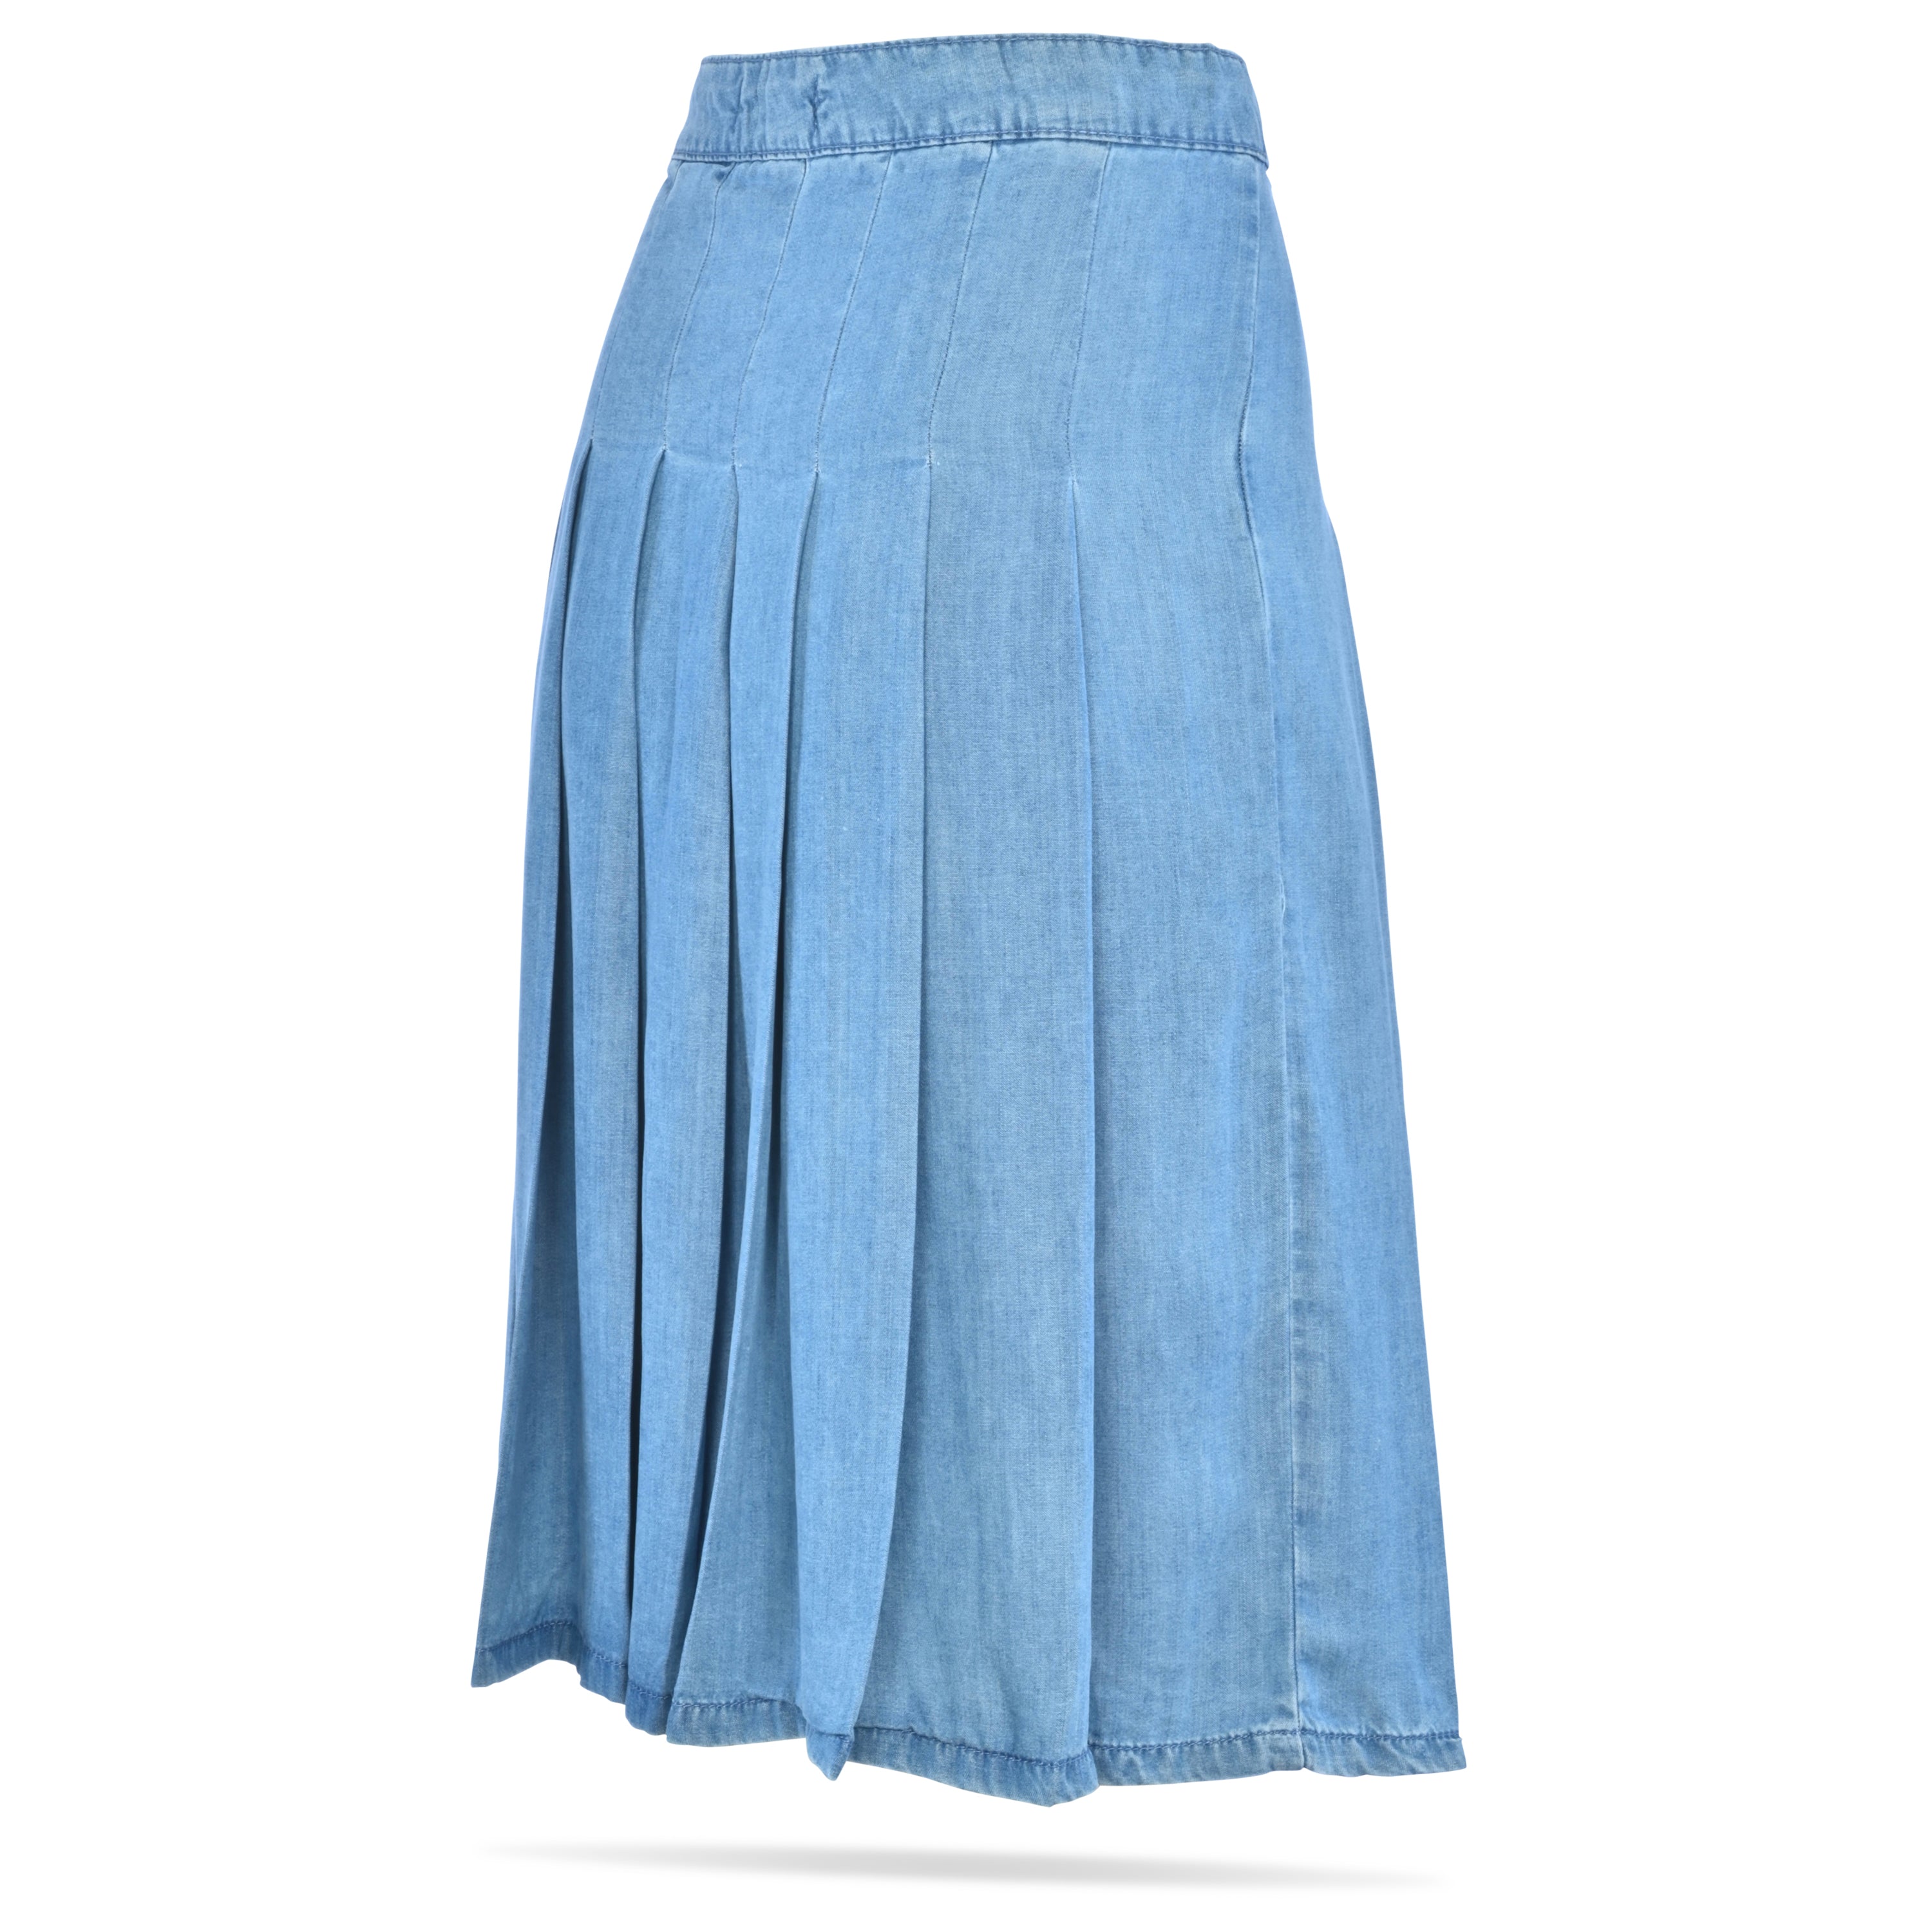 Calico Short_Skirt